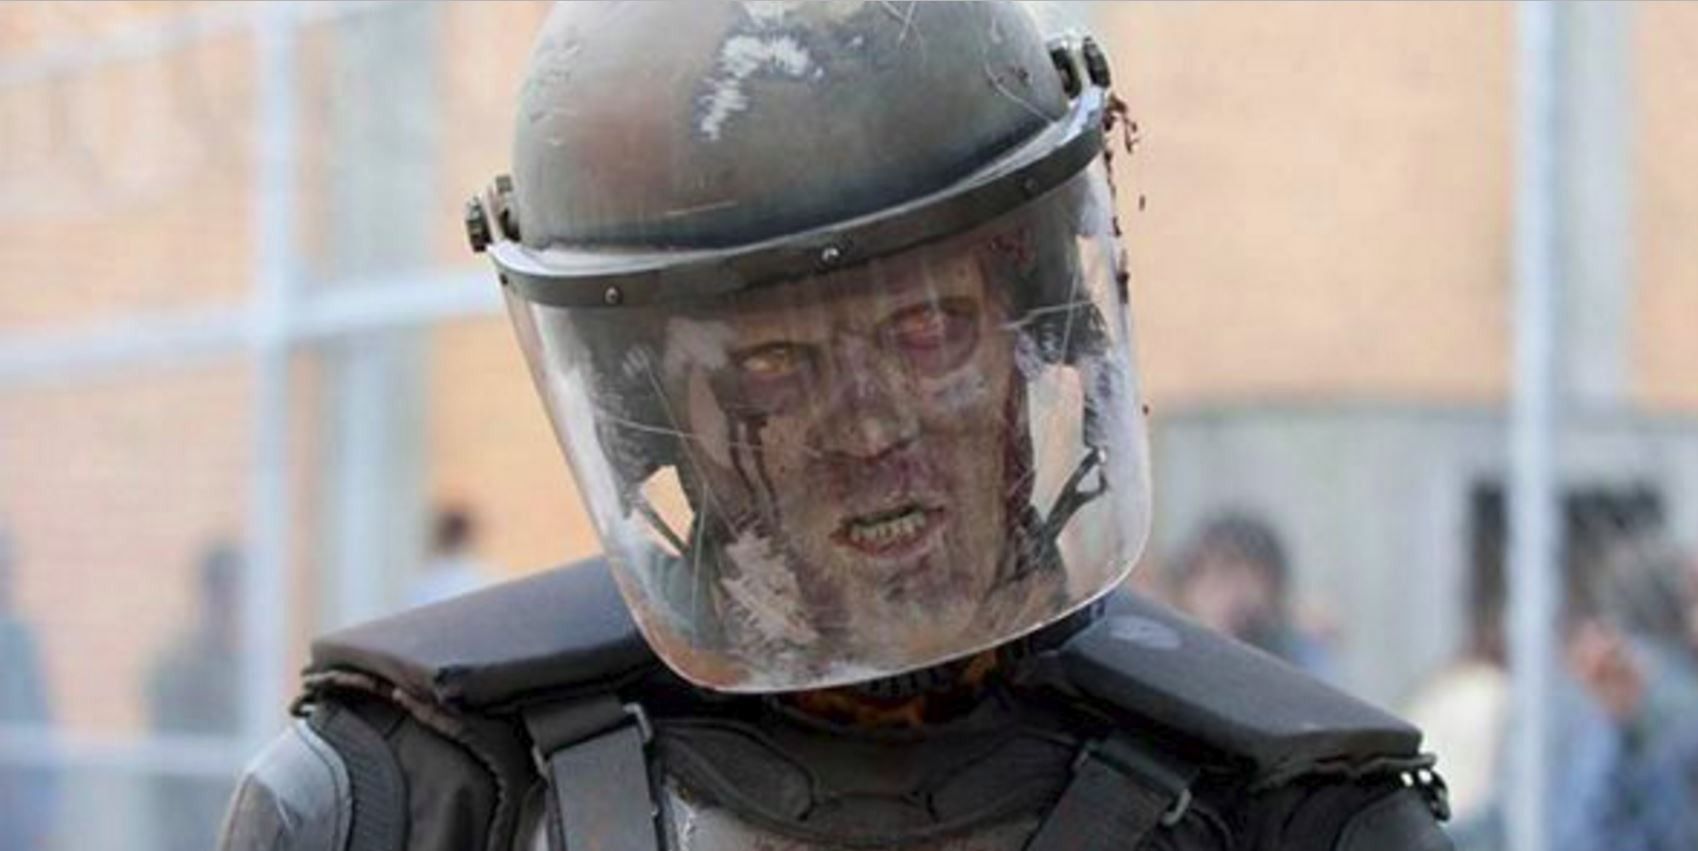 Riot Gear Zombie from Walking Dead